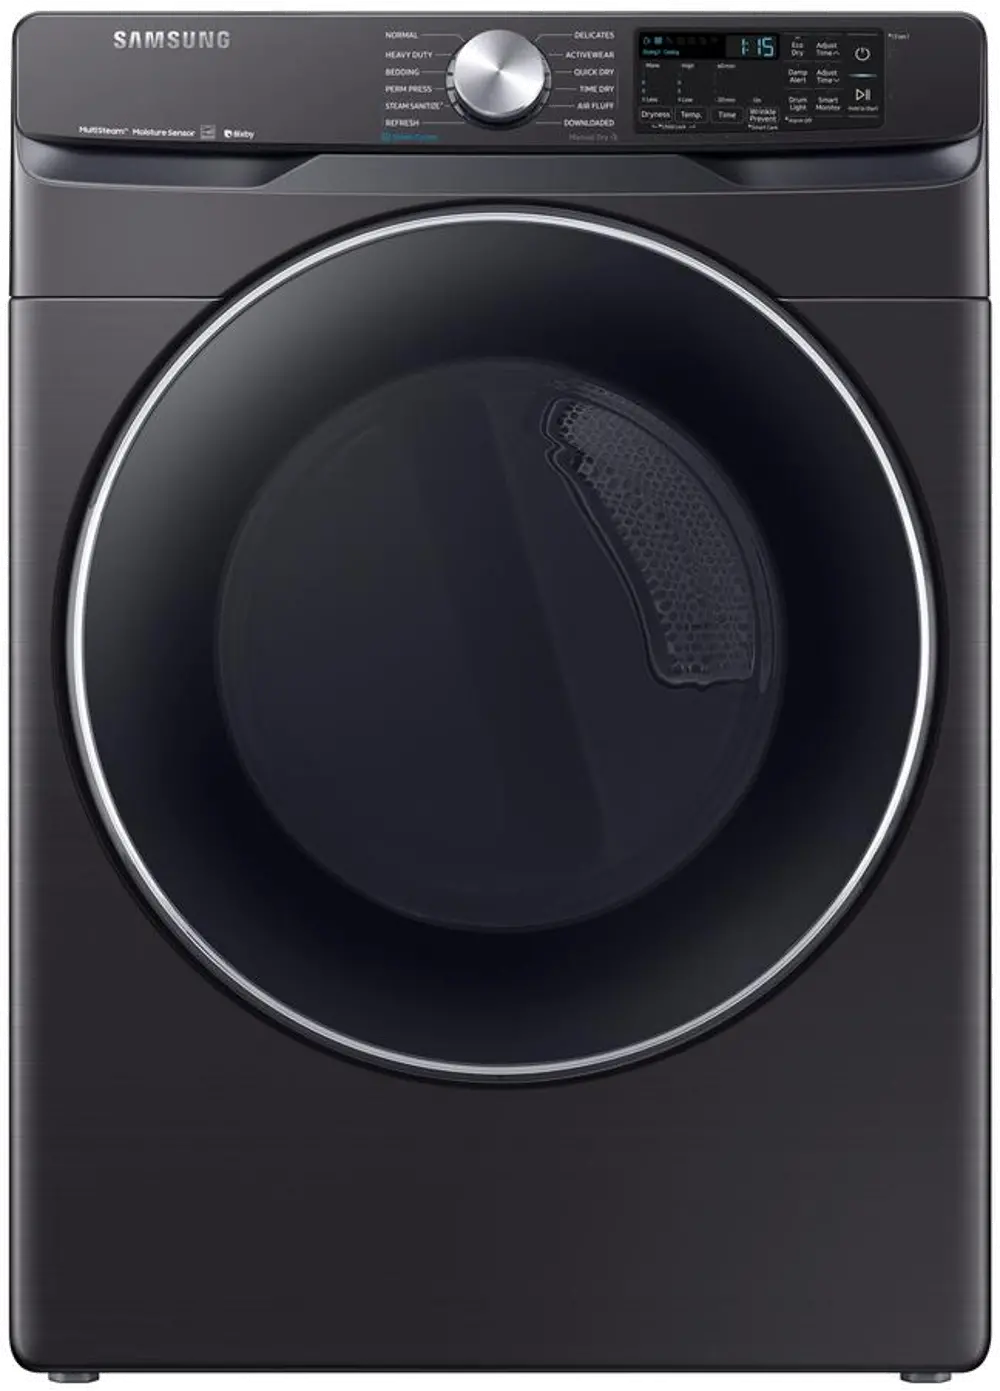 DVG45R6300V Samsung WiFi Enabled Gas Dryer - 7.5 cu. ft. Fingerprint Resistant Black Stainless Steel-1